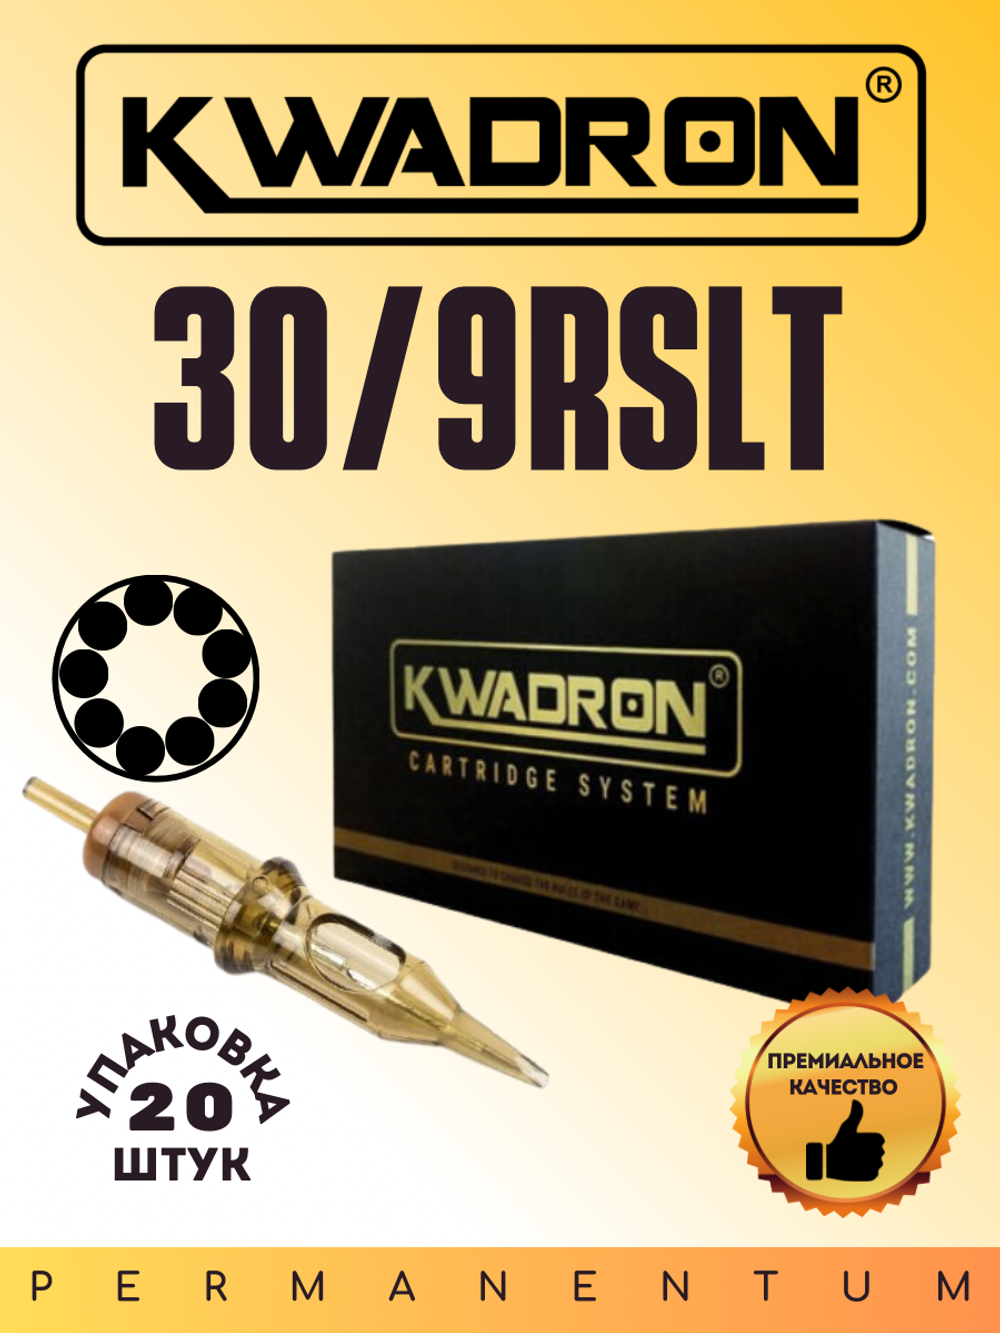 Картридж для татуажа "KWADRON Round Liner 30/9RSLT" упаковка 20 шт.